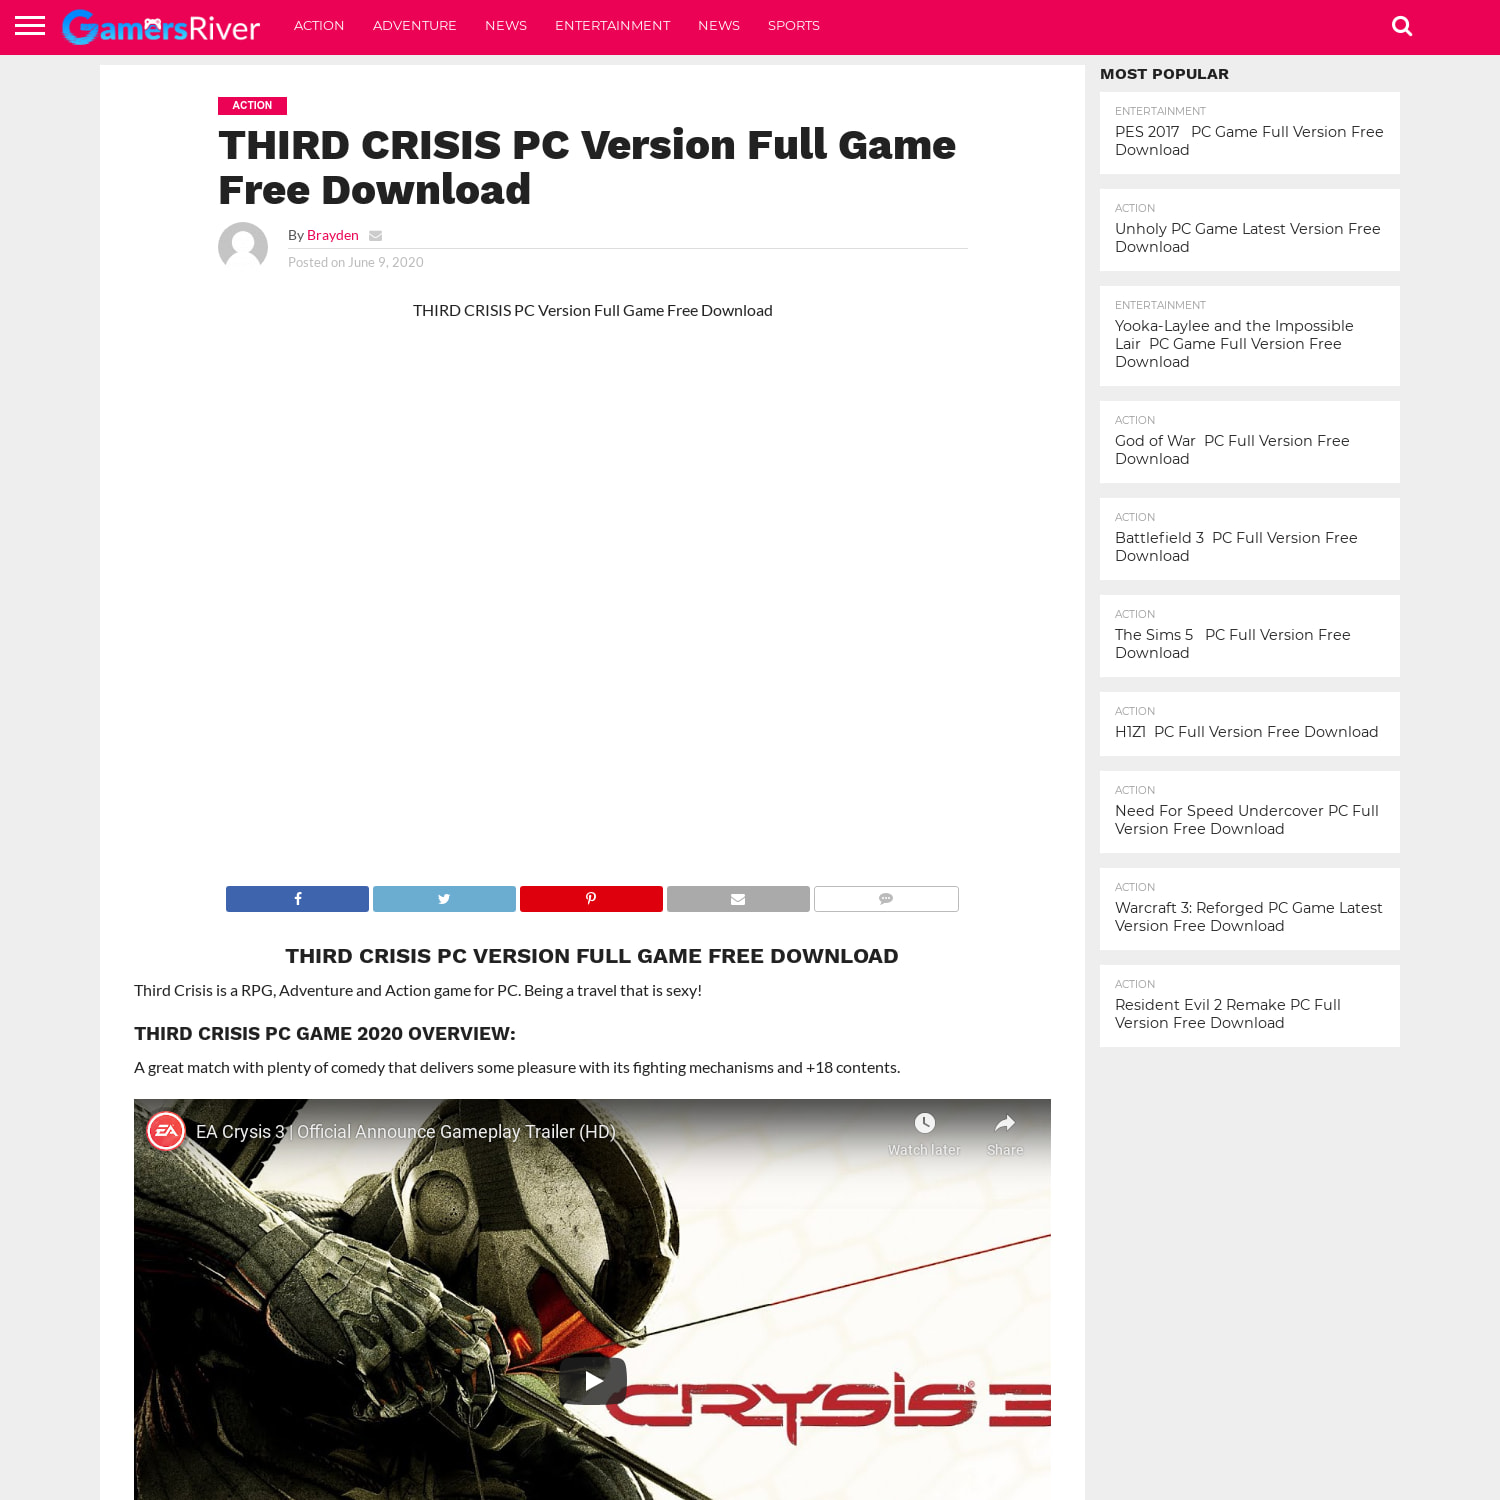 THIRD CRISIS PC Version Full Game Free Download